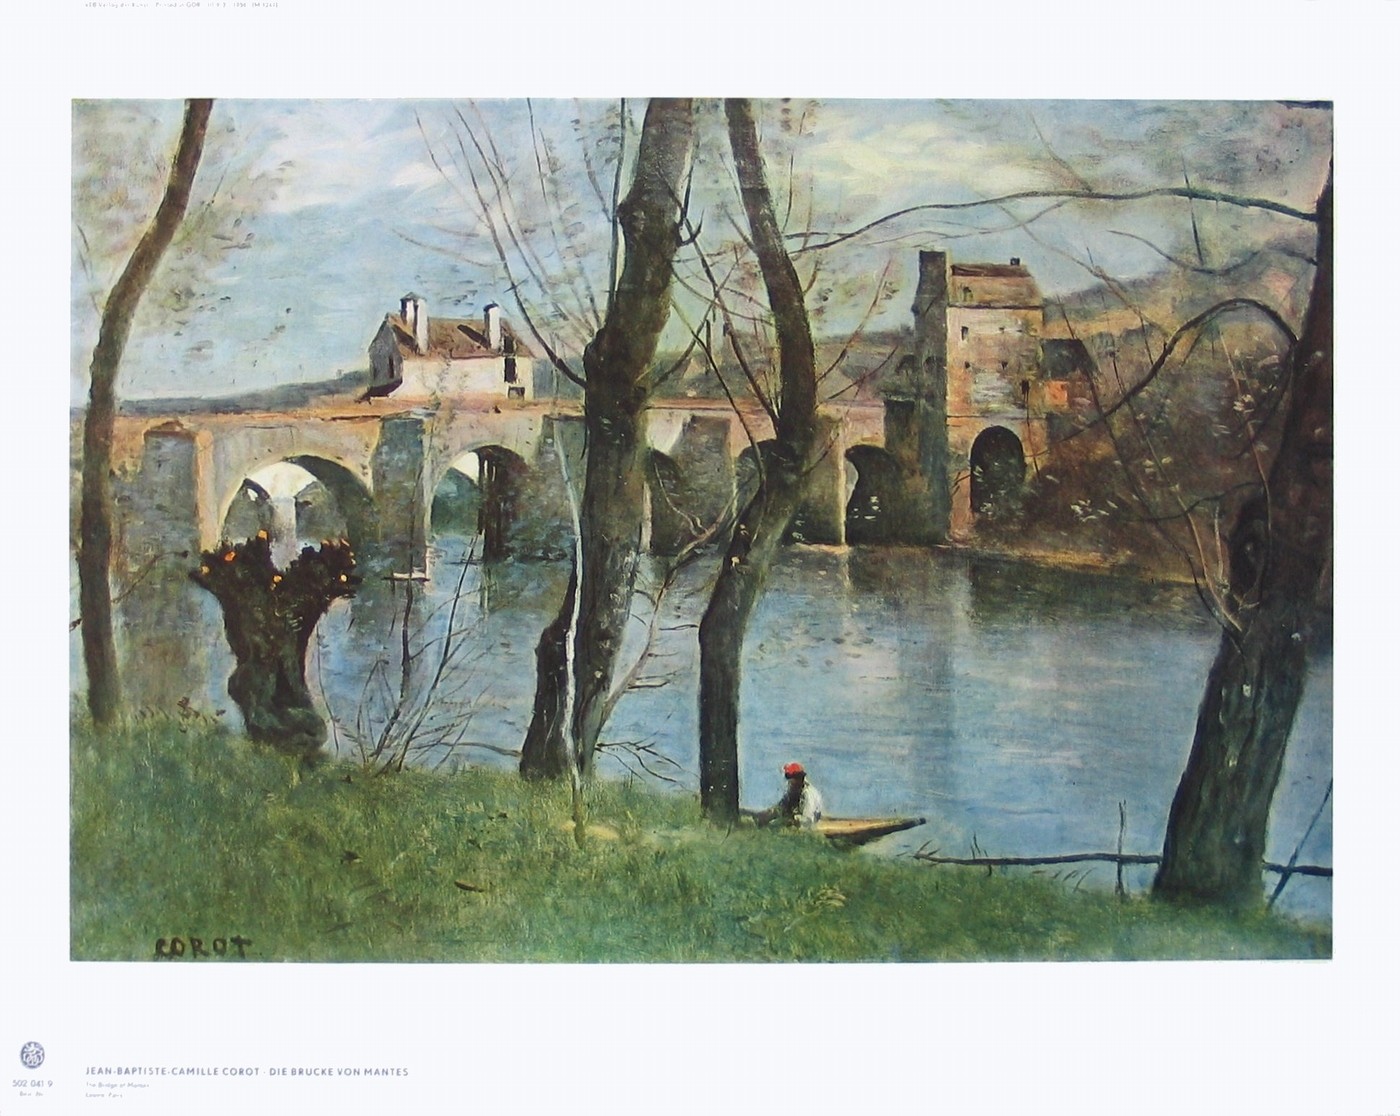 Jean-Baptiste Camille Corot, Die Brücke von Mantes (Landschaft, Landschaftsmalerei, Fluss, Brücke, historisch, Frankreich, Klassiszismus Sommer, Wohnzimmer, Malerei, Klassiker, bunt)